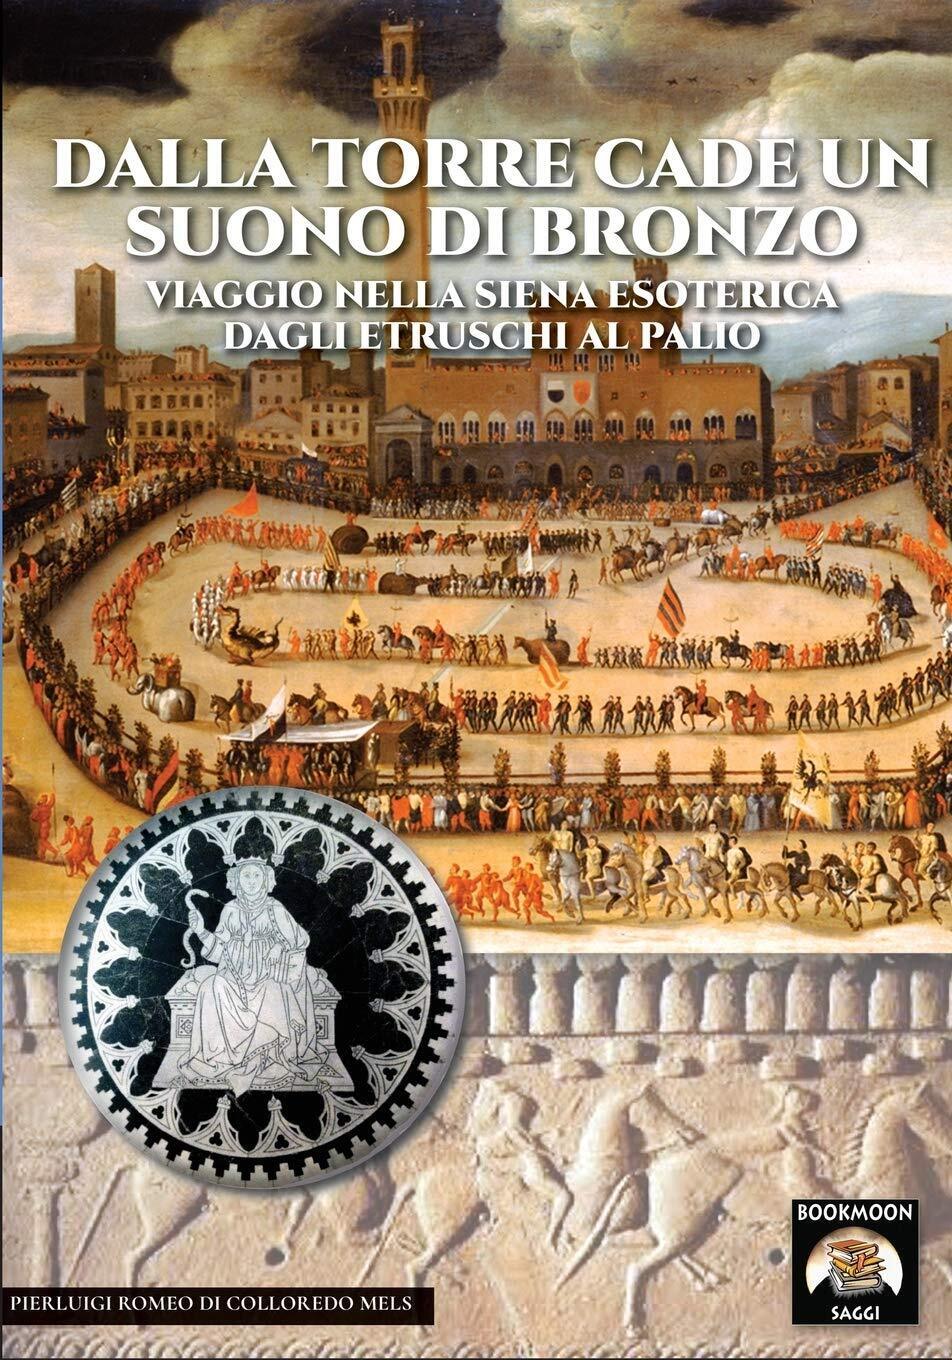 Dalla torre cade un suono di bronzo:Viaggio nella Siena esoterica dagli etruschi